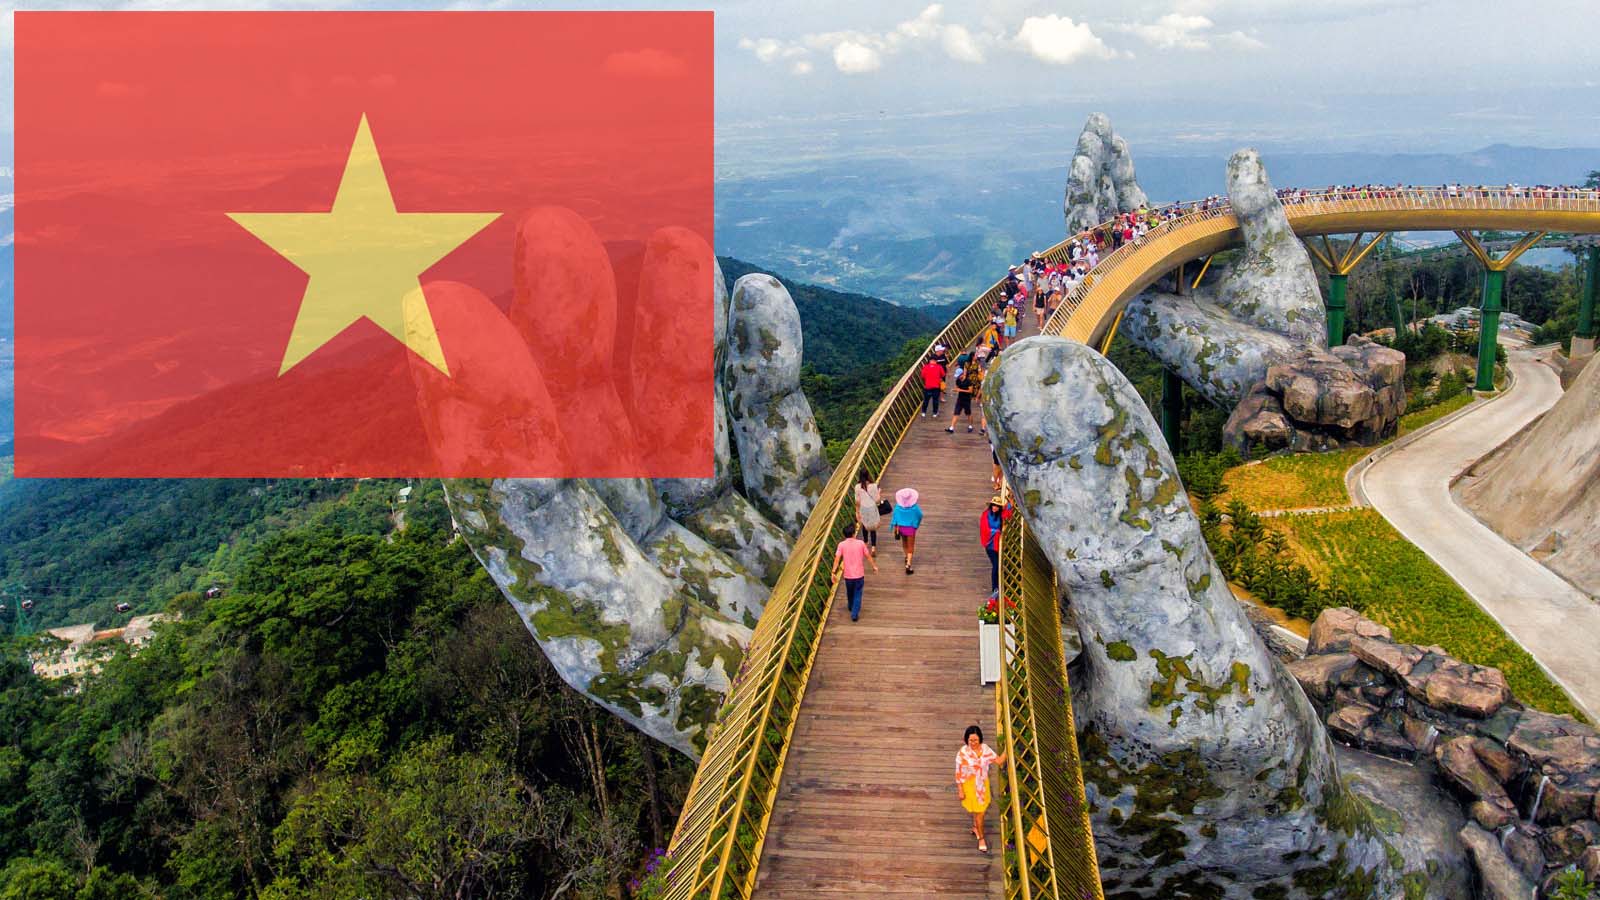 VIETNAM: Negara Asia Tenggara di Sebelah Timur Laos